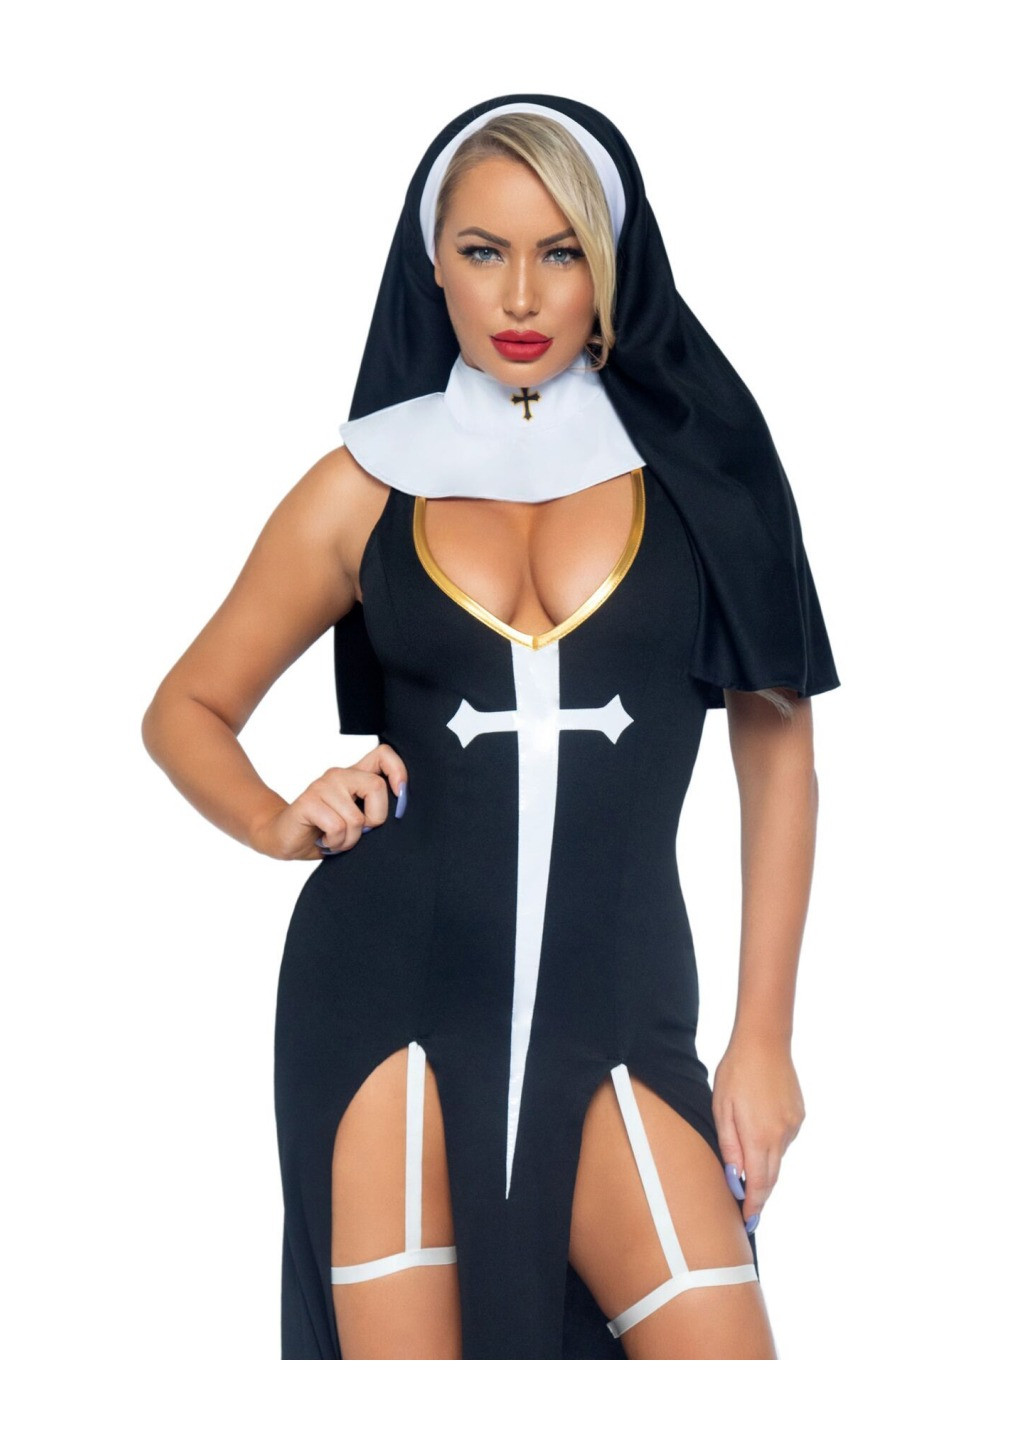 Прозрачный демисезонный костюм монашки-грешницы sultry sinner l, платье, головной убор, воротник Leg Avenue